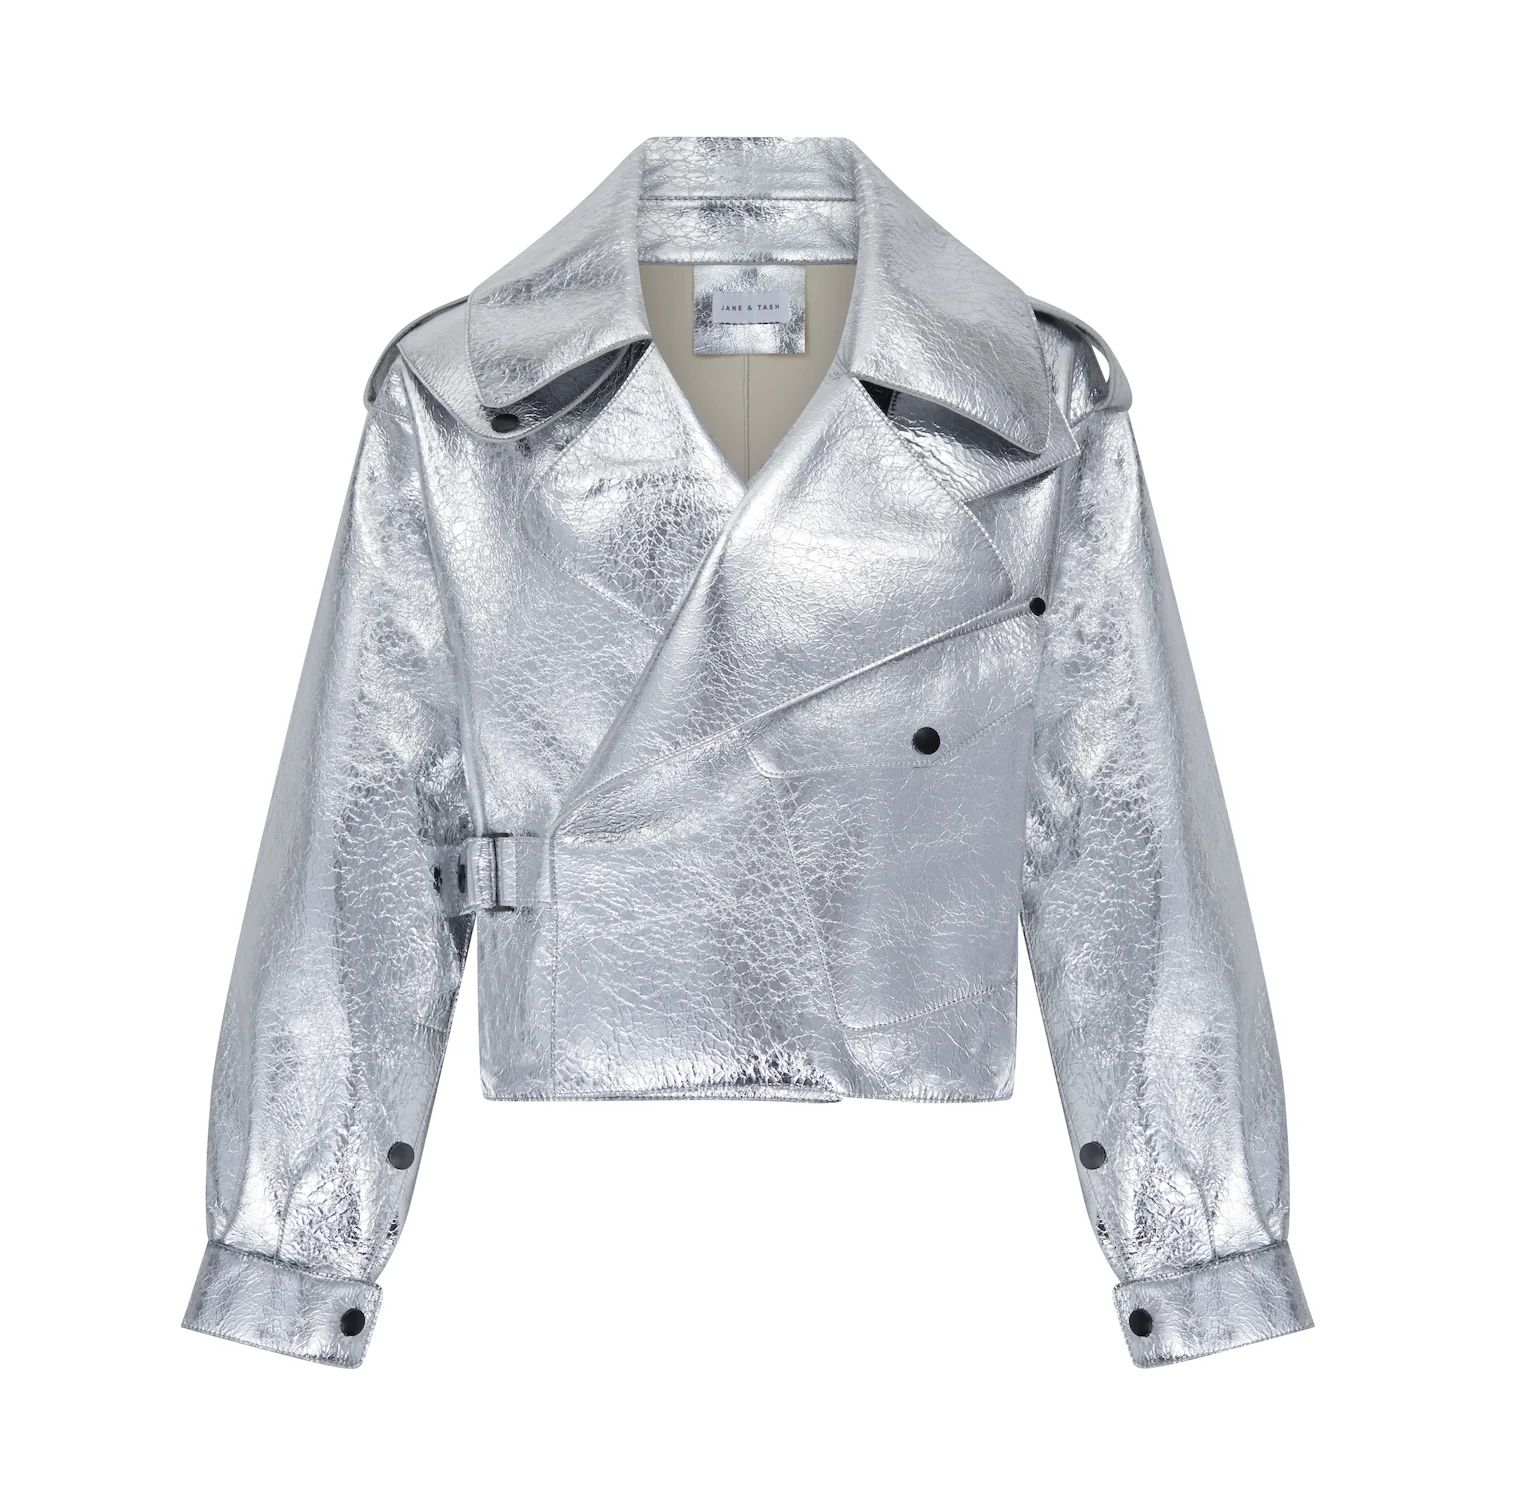 Silver Oversized Leather Jacket | Jane and Tash Bespoke